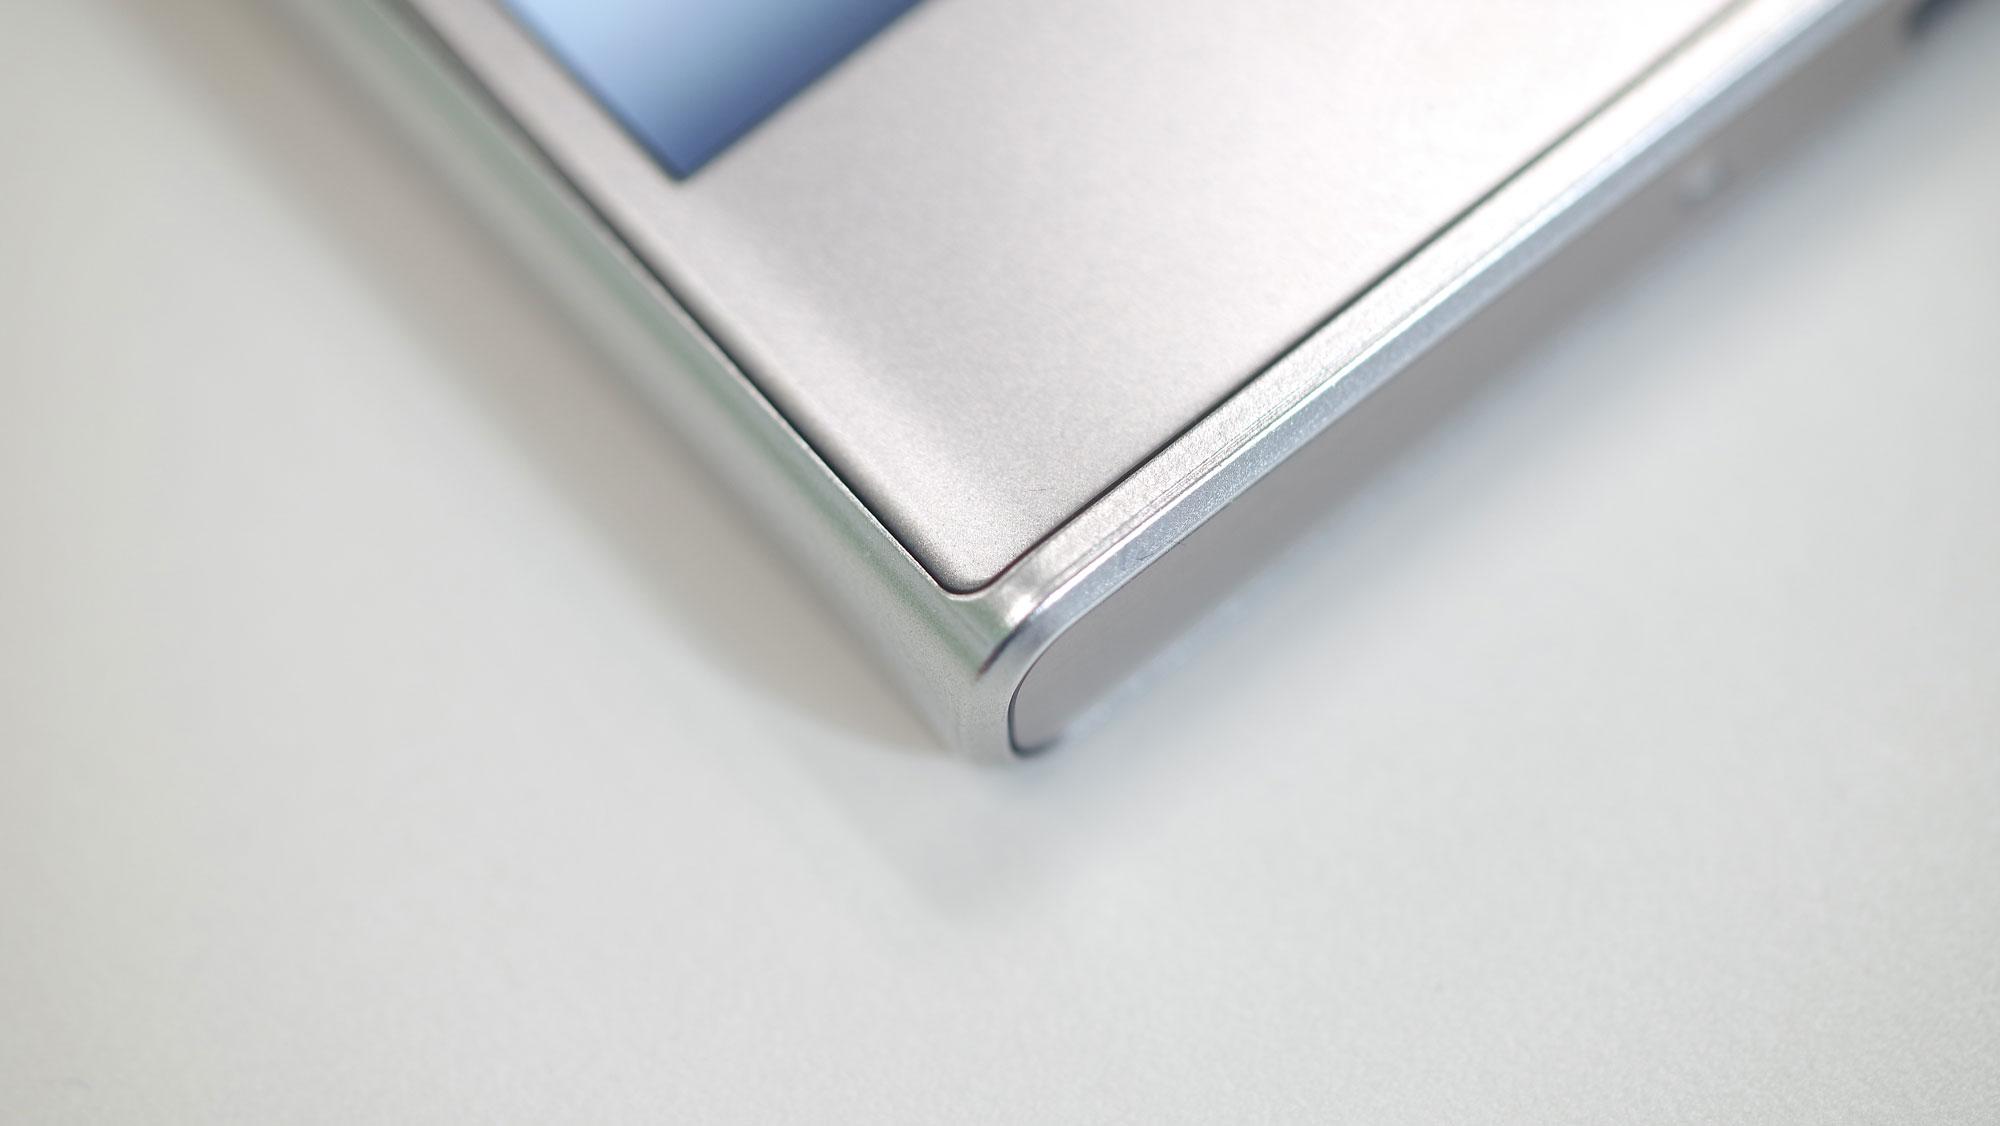 Sony Xperia XZ carcasa de aluminio en alkaleido